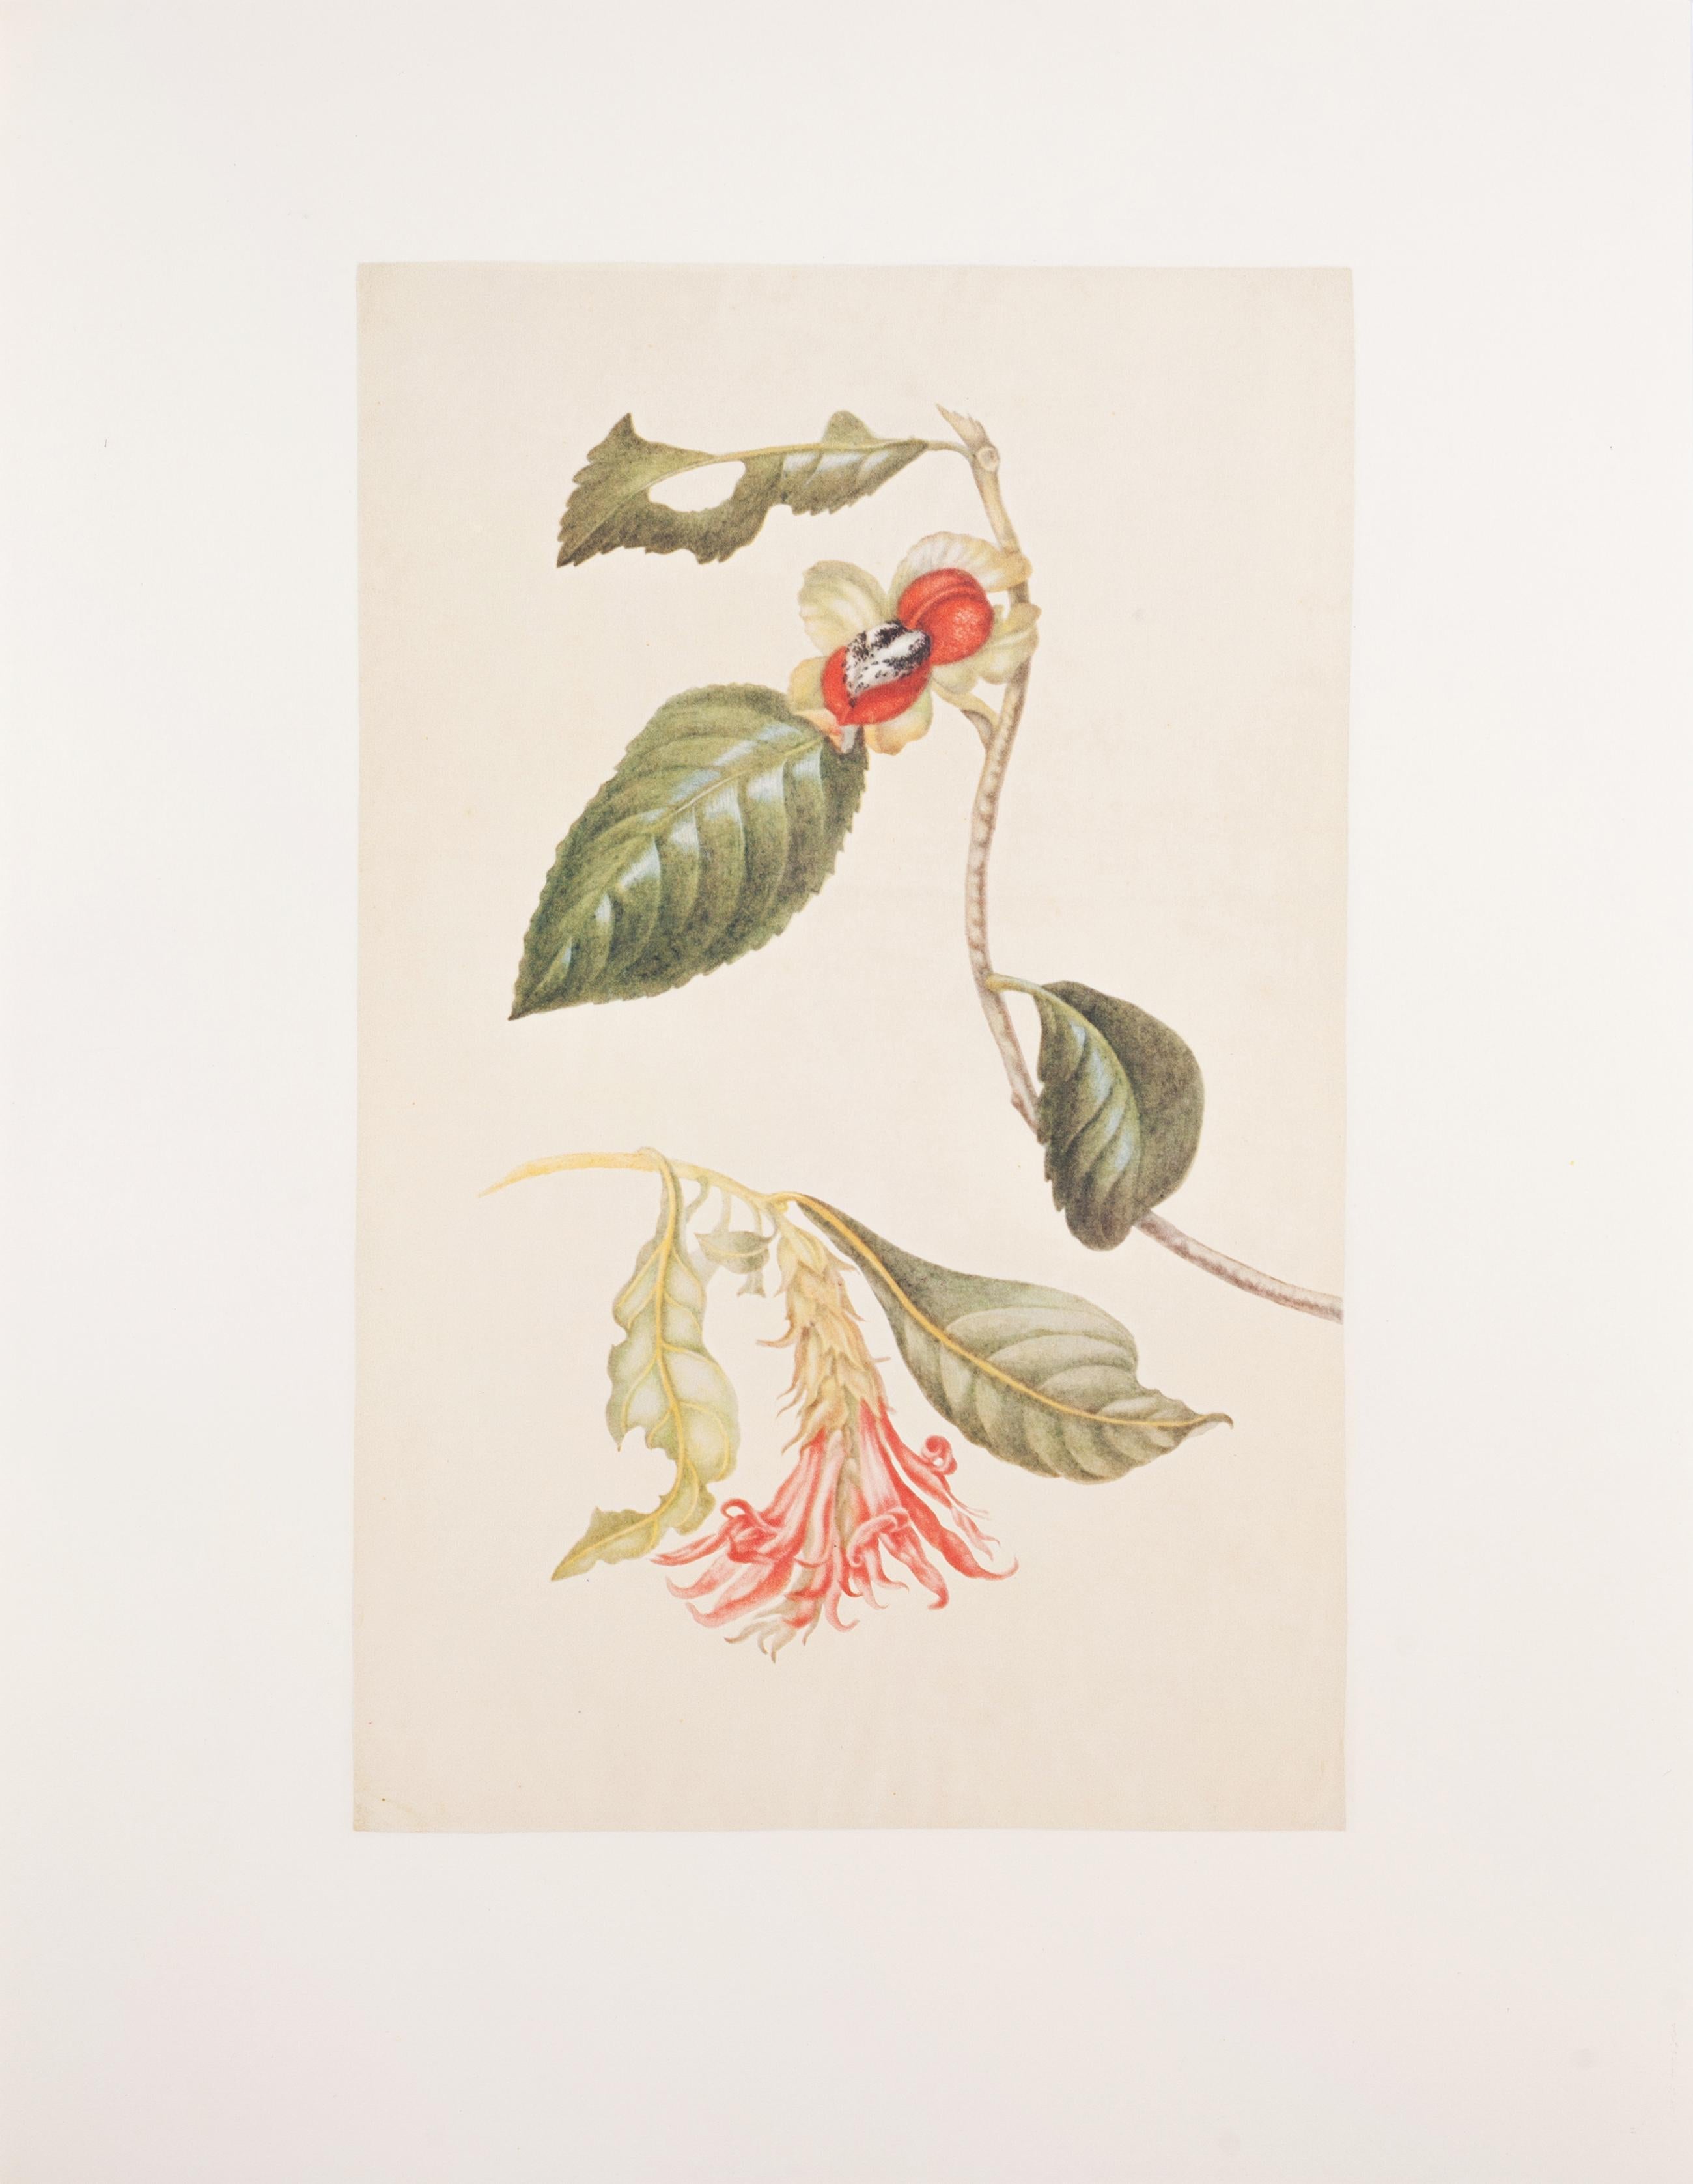 25. Sprühfarbe mit Blumen, nicht eindeutig identifizierbar  – Print von Maria Sybilla Merian